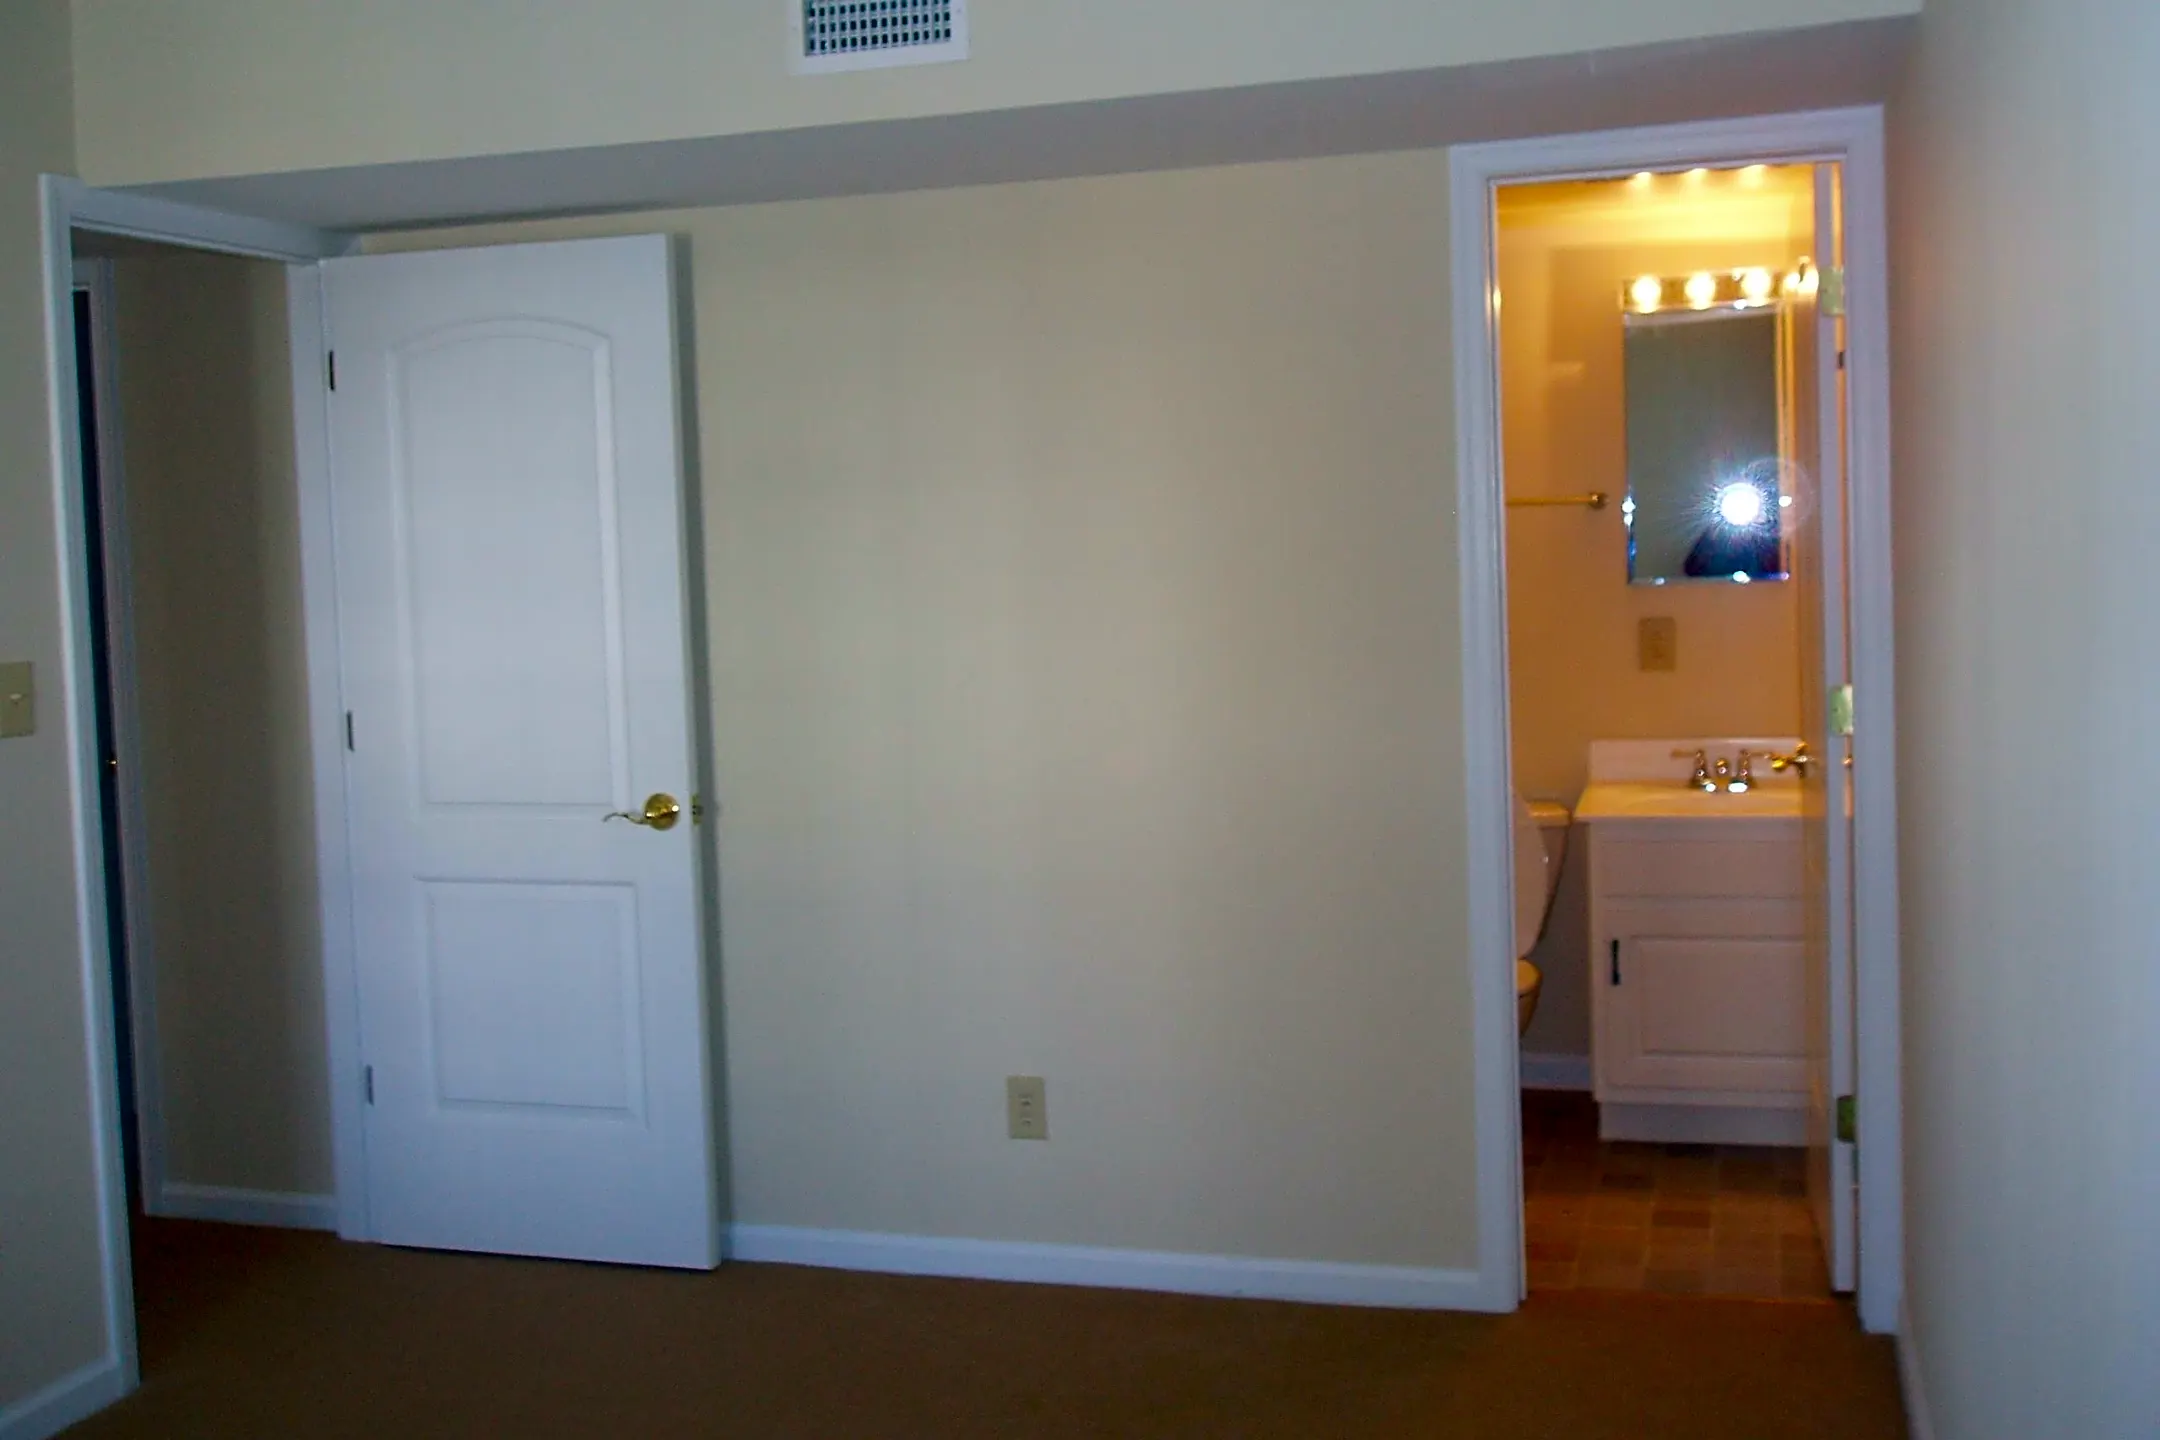 Bedroom - 1508 Villa Ter #F - Charlottesville, VA